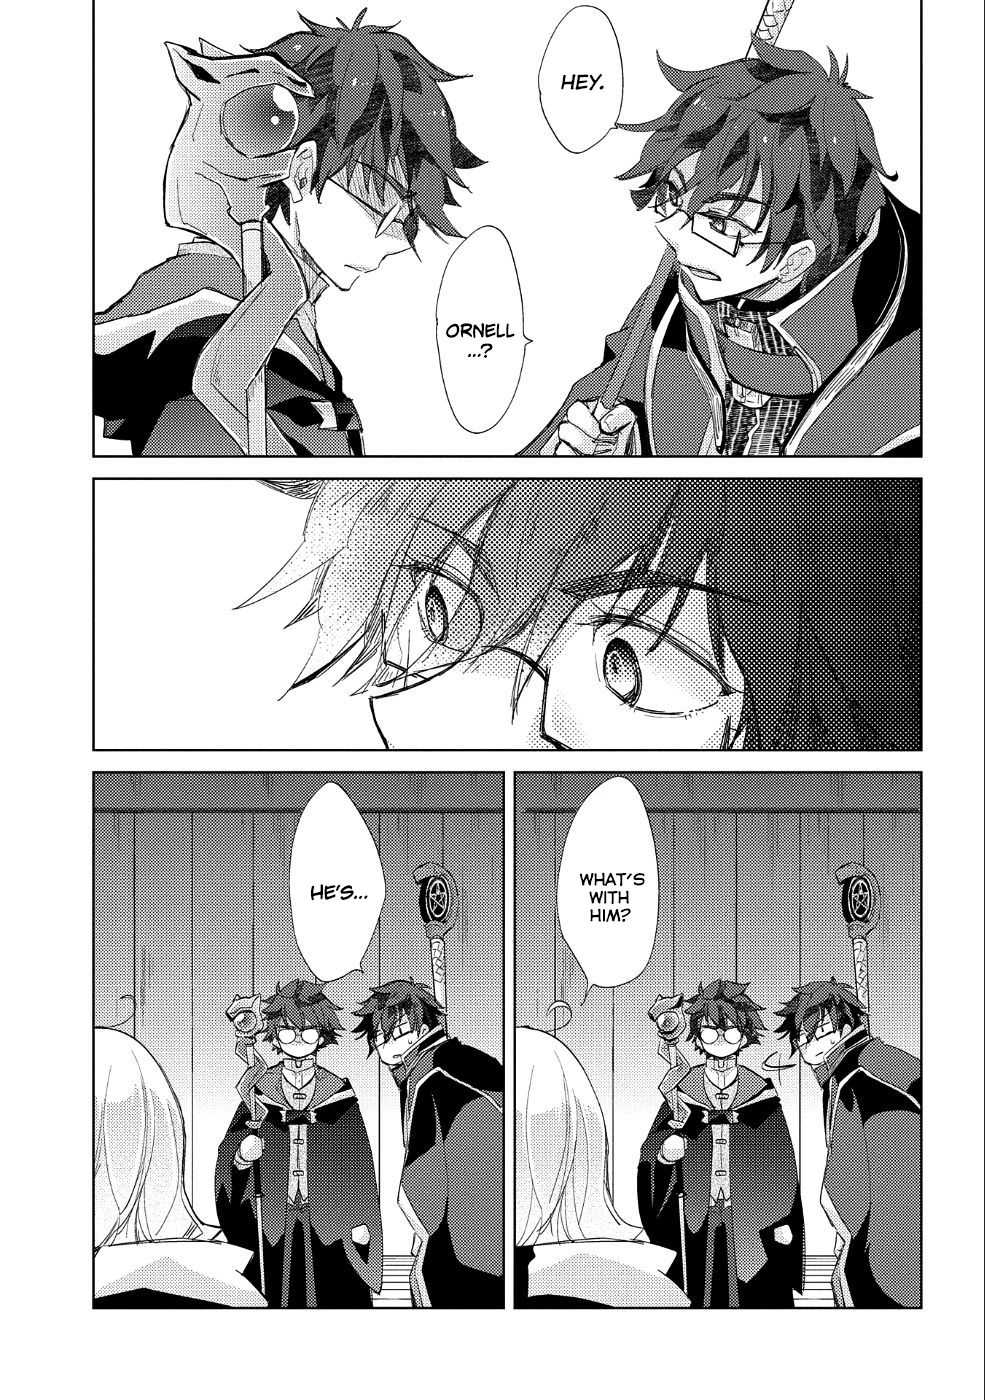 fools manga chapter 20